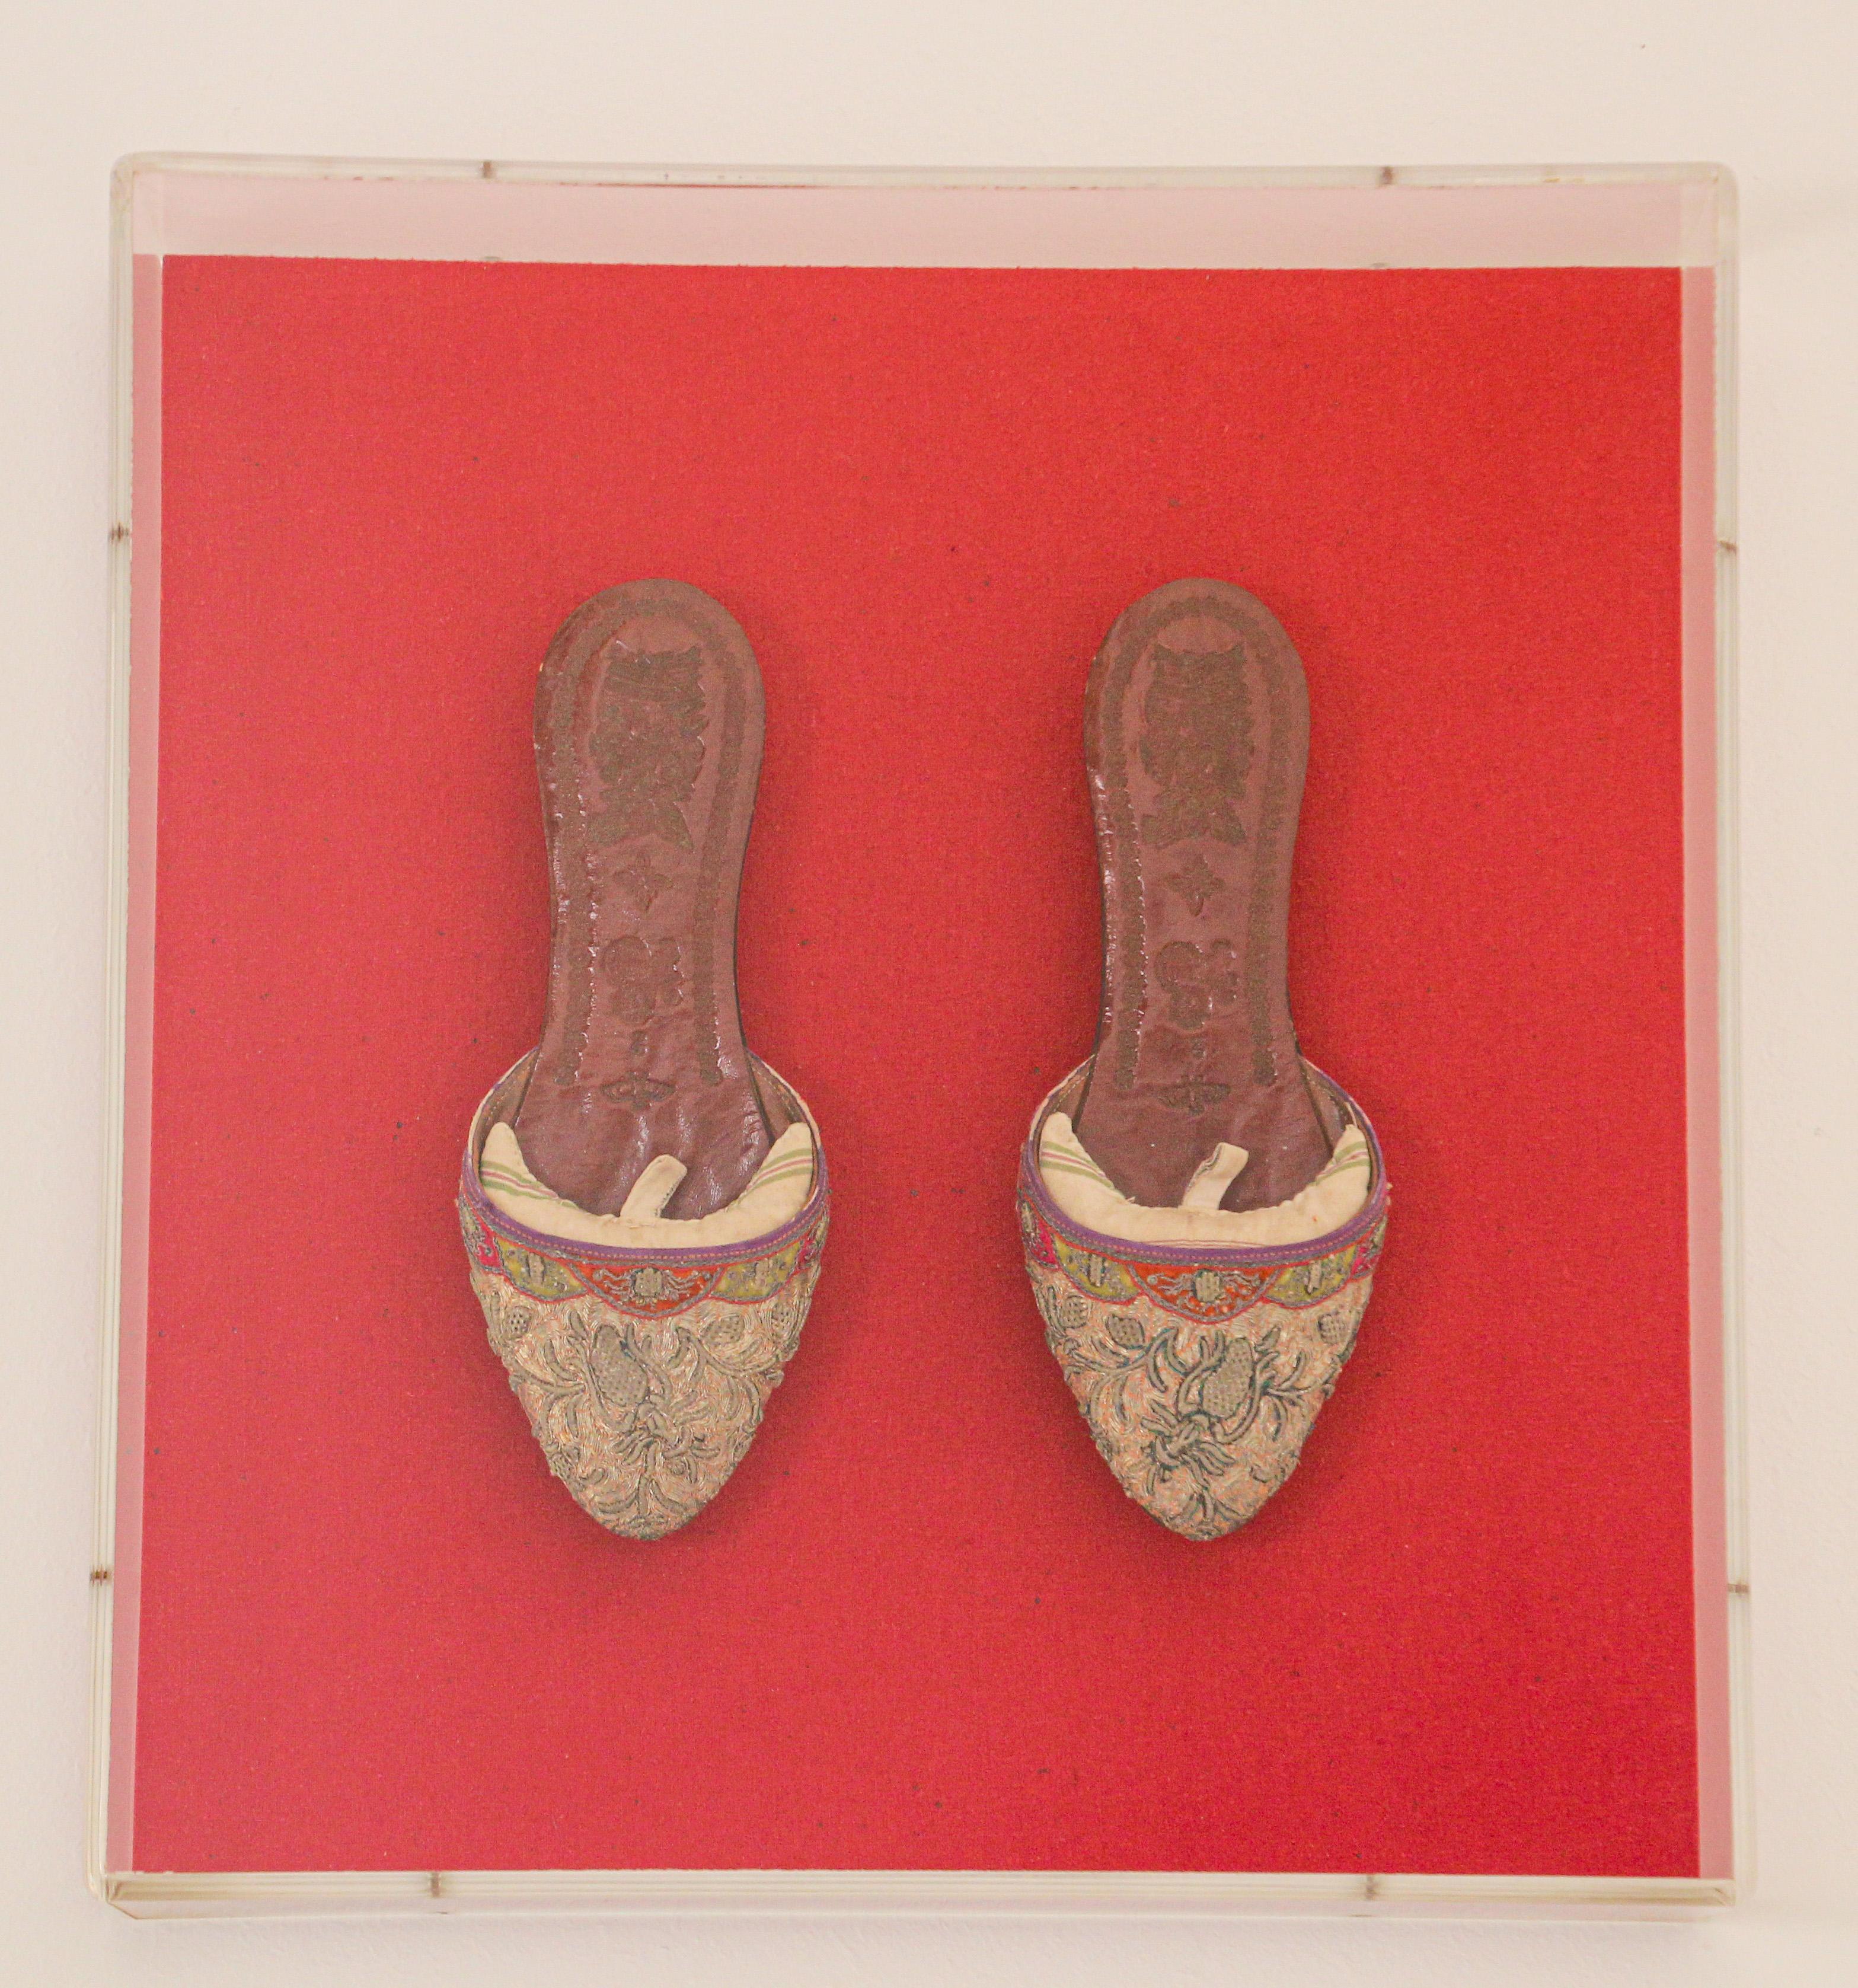 Ein Paar asiatische chinesische Schuhe aus Leder und Seide, bestickt und mit Goldfäden verziert, eingerahmt in einer Lucite-Box.
Exquisites Paar antiker Sammlerschuhe, montiert und präsentiert auf einem roten Hintergrund.
Großartige asiatische